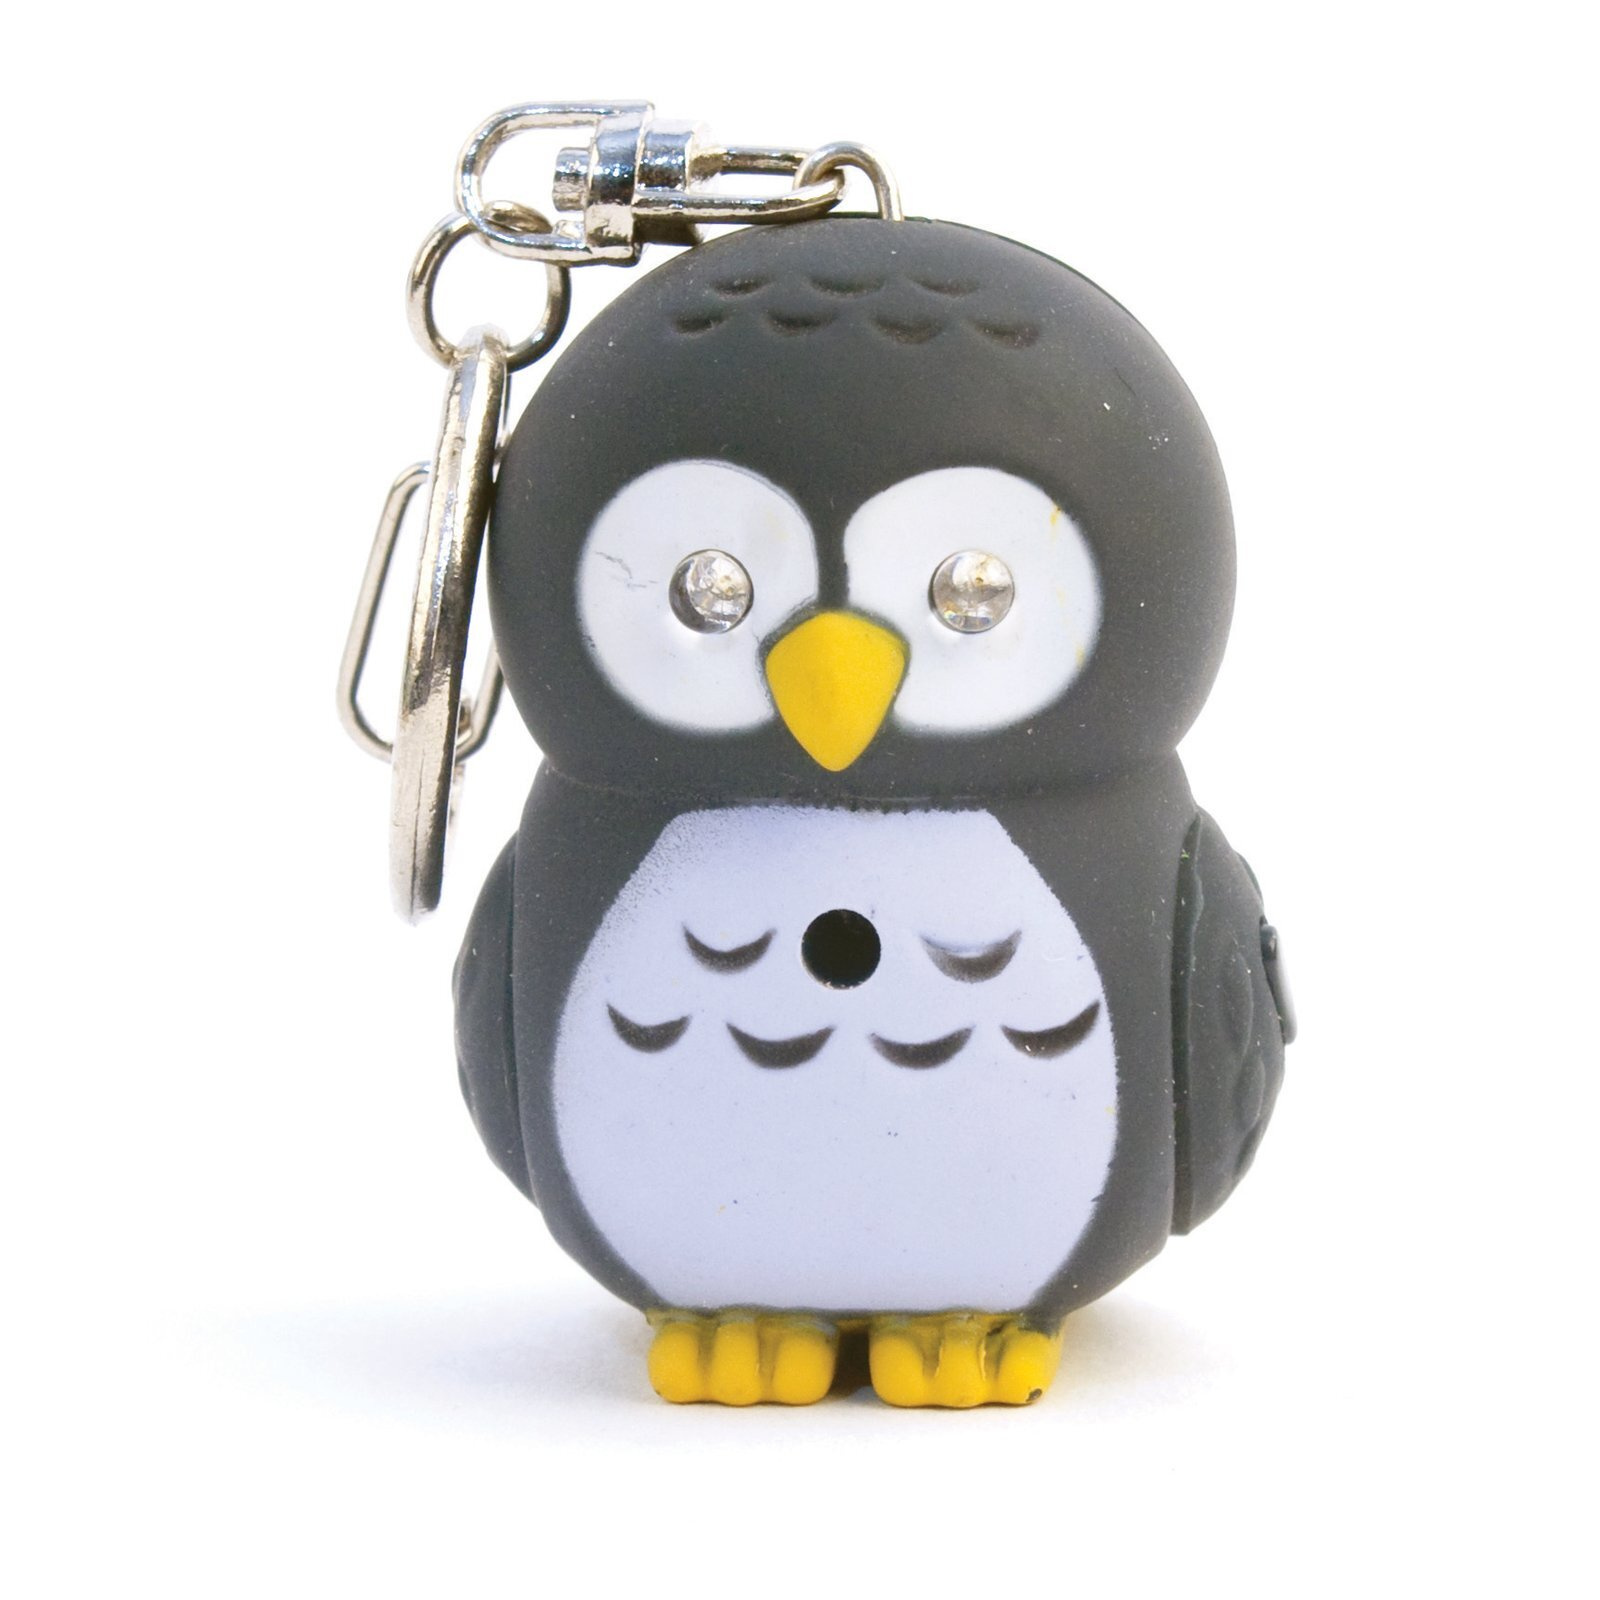 technisch strand Kwijtschelding Kikkerland keyring Owl Led 5 x 3,8 cm rubber grey - Internet-Toys